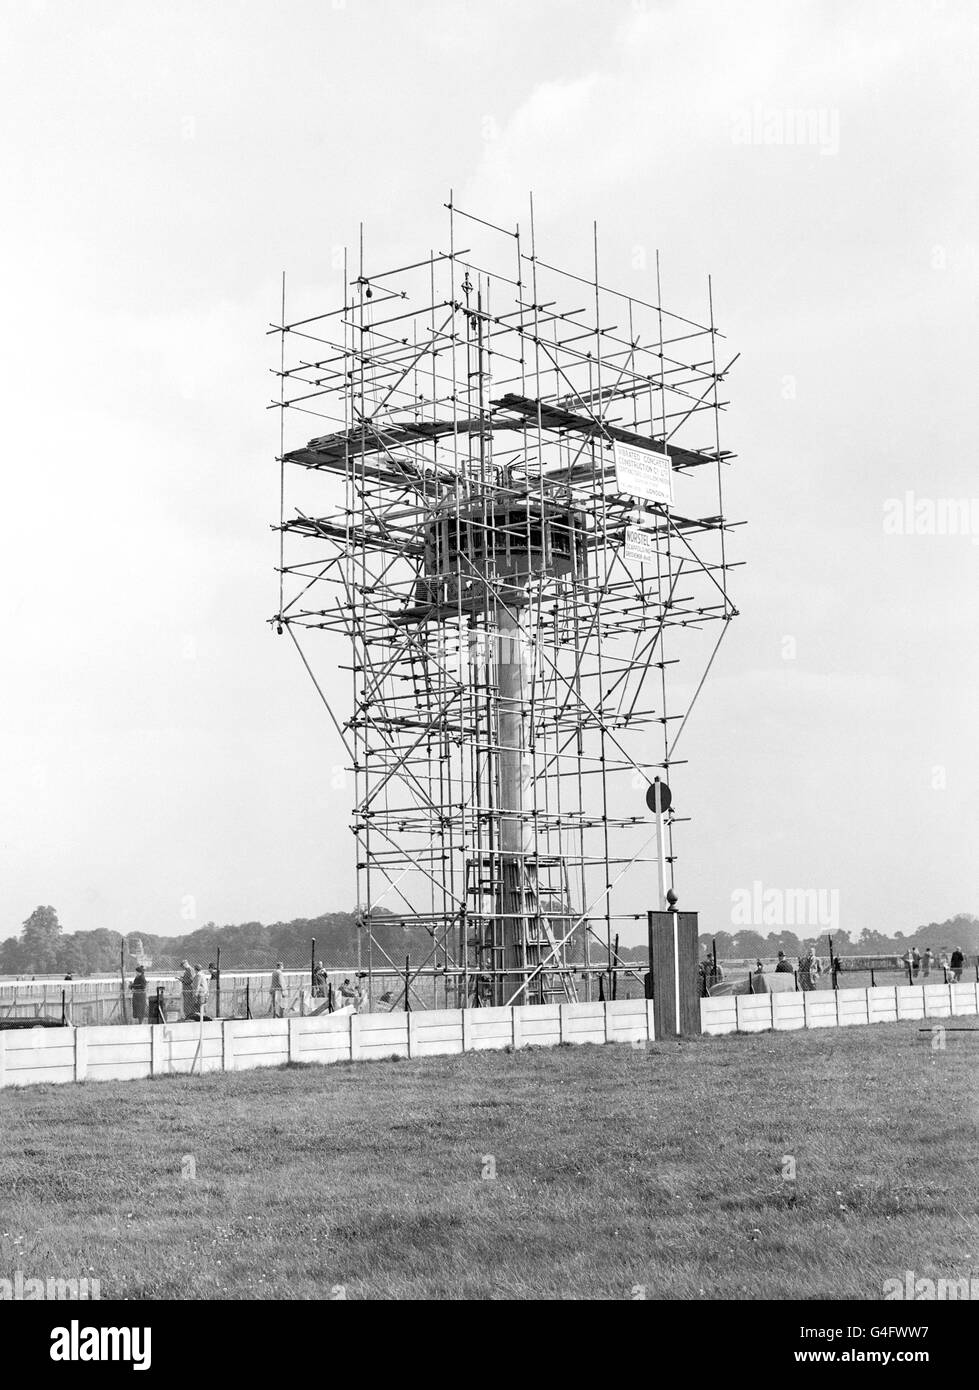 Carreras de caballos - Finish Tower Construction - Hipódromo de Kempton Park. La torre de hormigón que se está erigiendo en Kempton Park para una cámara de acabado fotográfico Foto de stock